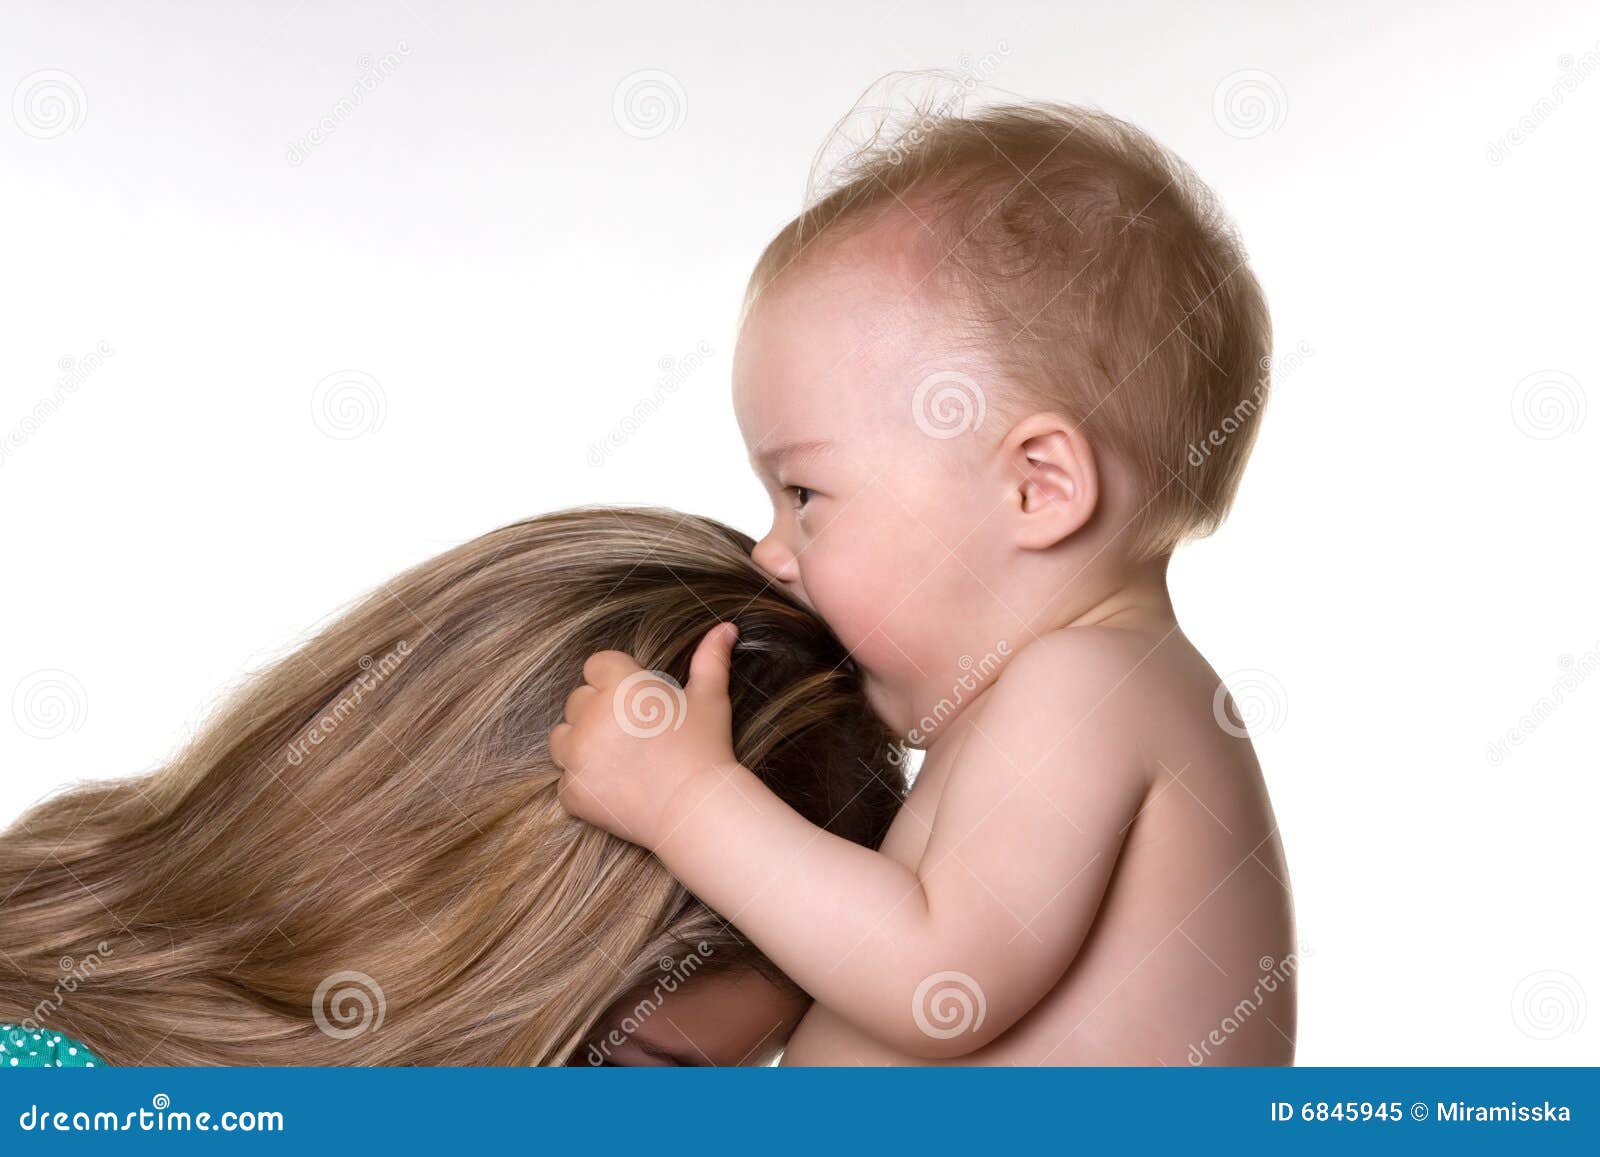 Выпадают волосы после родов при грудном. Волосы с ребенком послеродовых. Волосы ребенка после рождения. Выпадают волосы после родов. Выпадение волос после рождения.